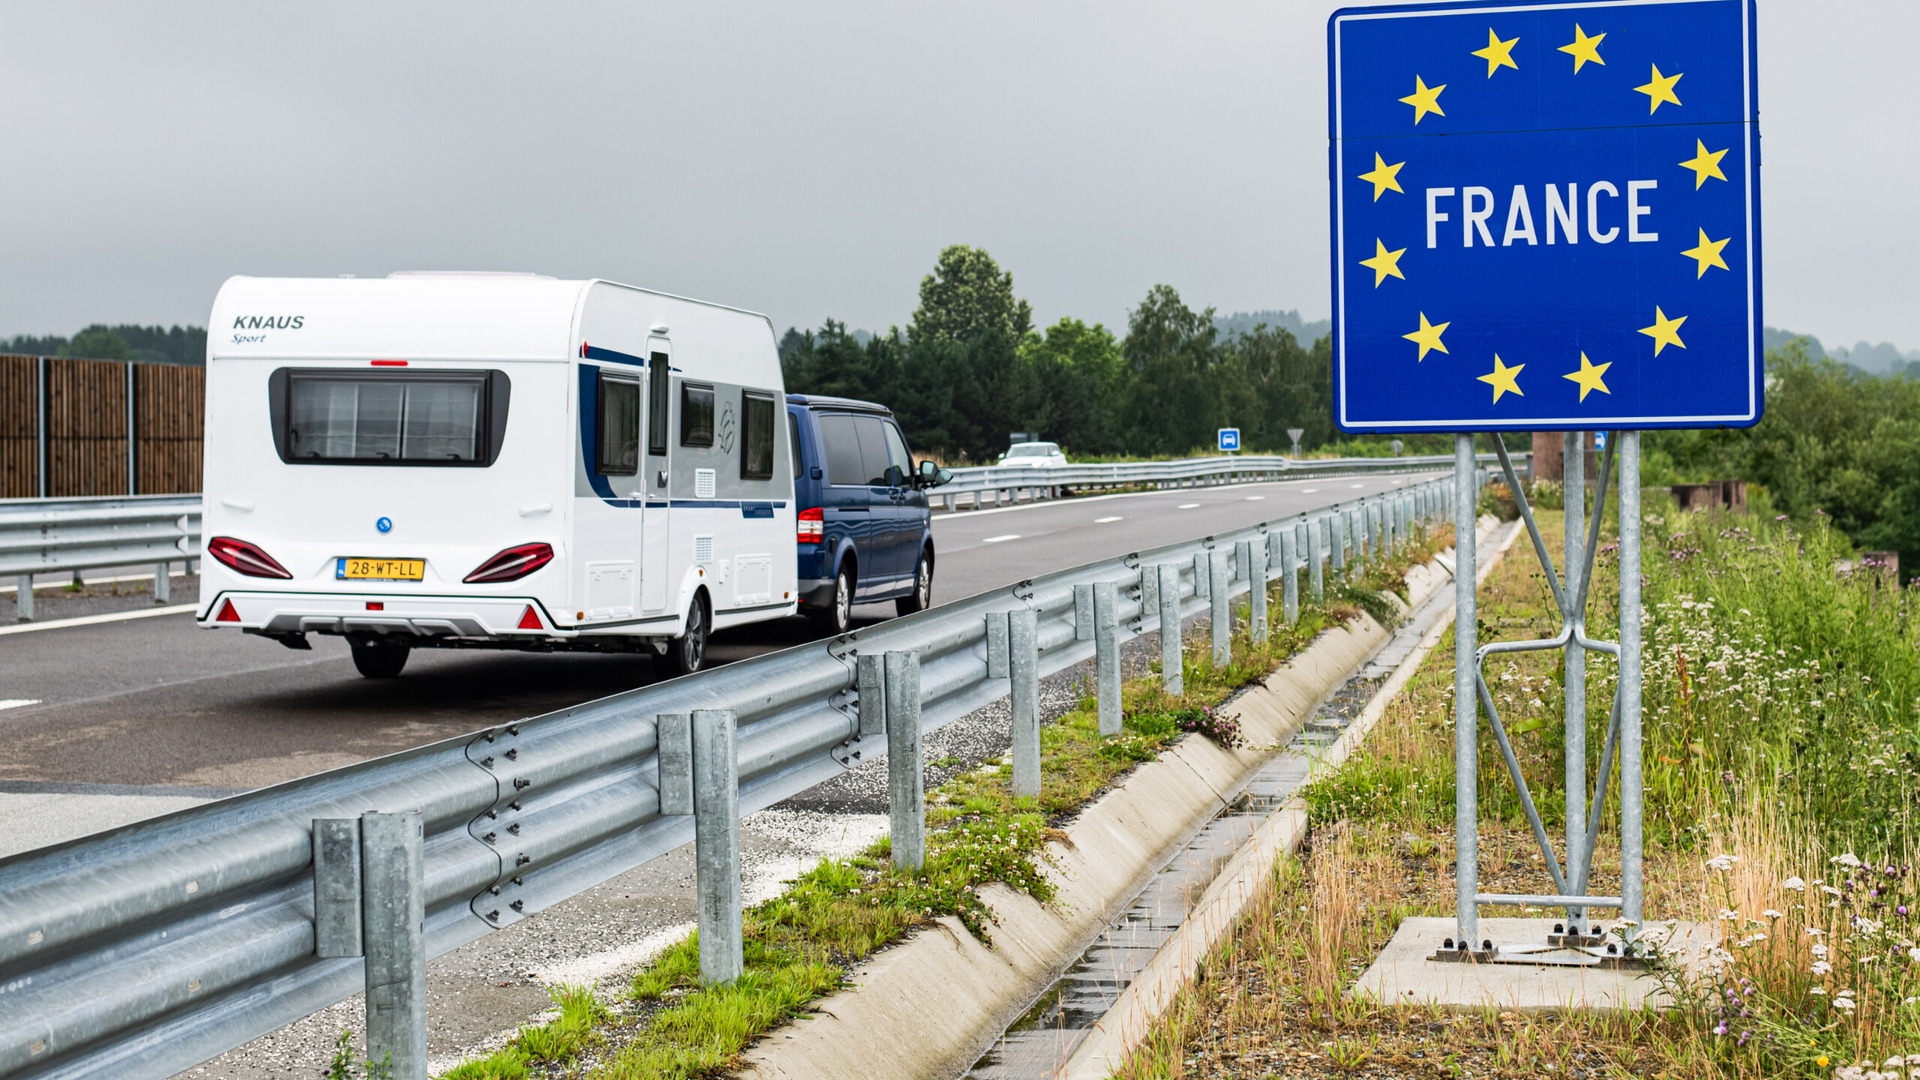 Nederlandse toeristen onderweg naar Frankrijk